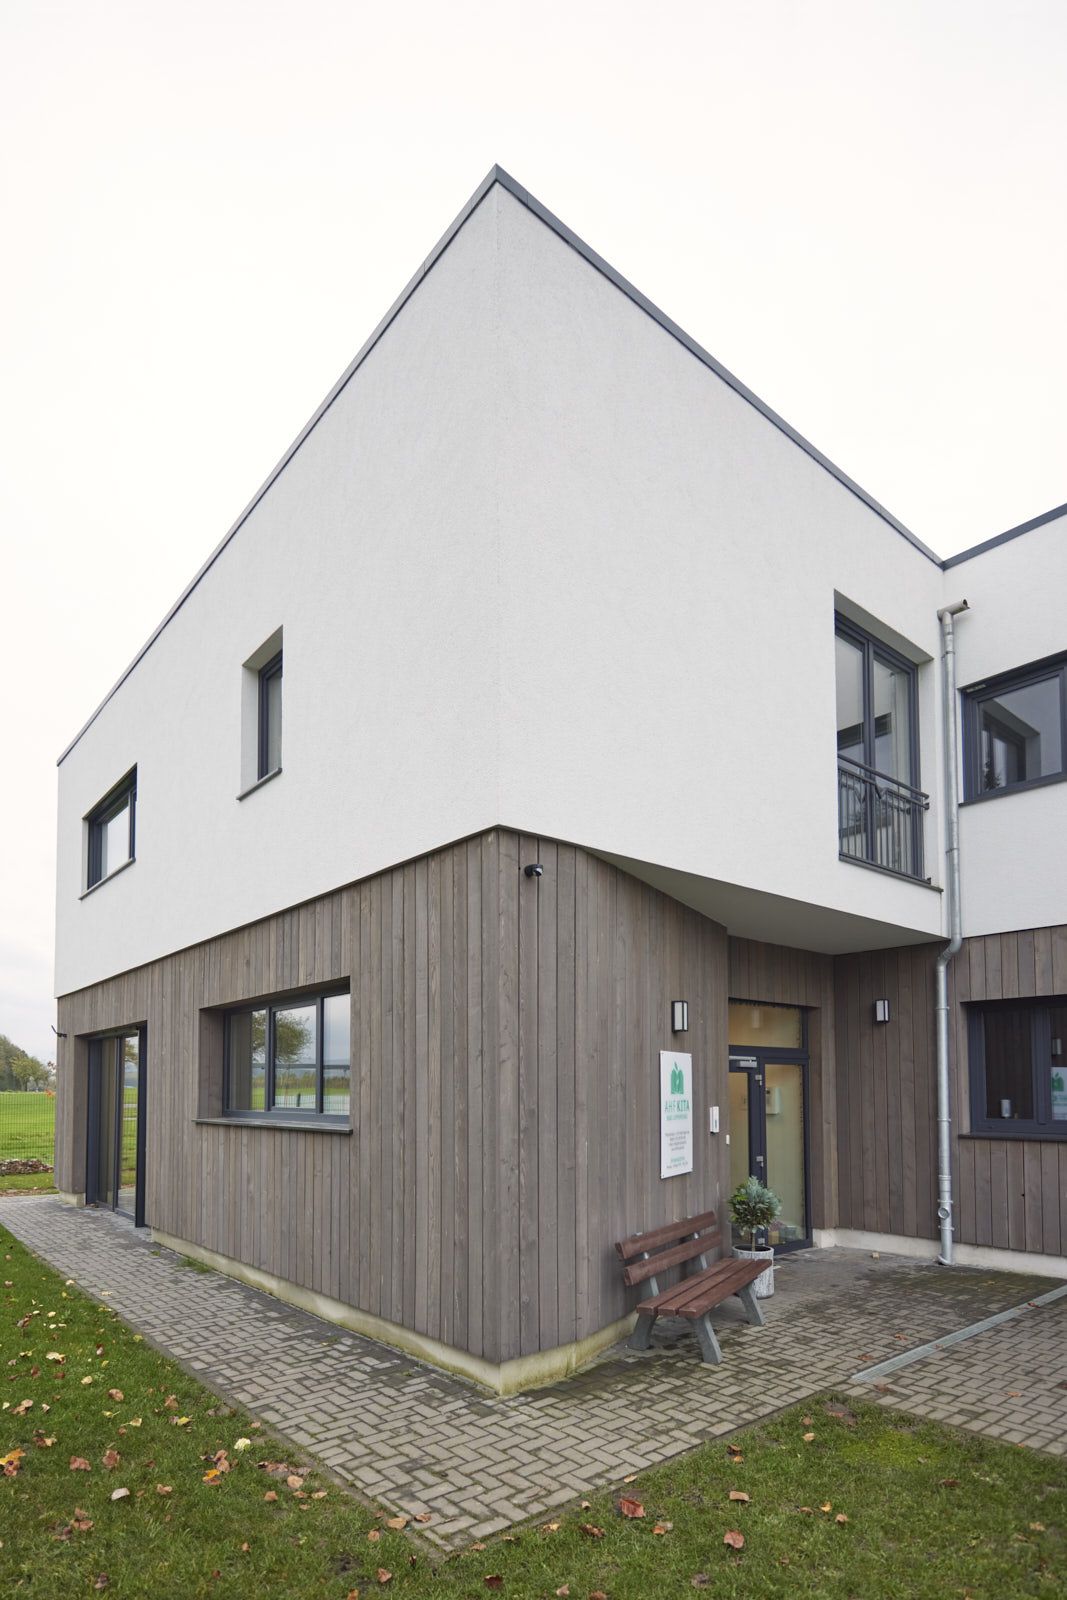 AHF Kindertagesstätte in Bad Lippspringe. Gebäude der KiTa mit Holz- und Putz-Fassade. Eingangsbereich. EPU Architekten